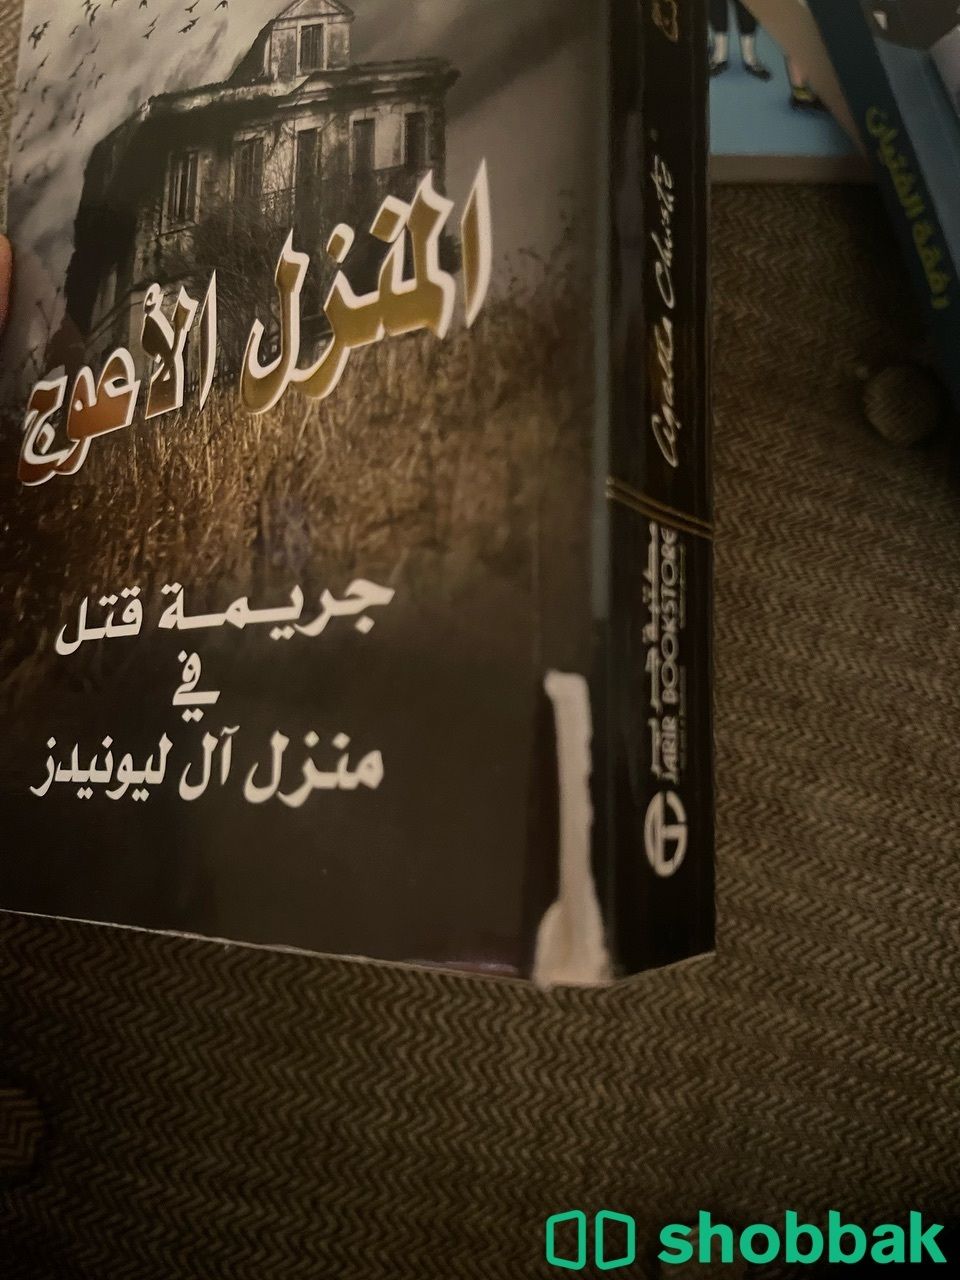 كتاب اجاثا كريستي المنزل الاعوج Shobbak Saudi Arabia